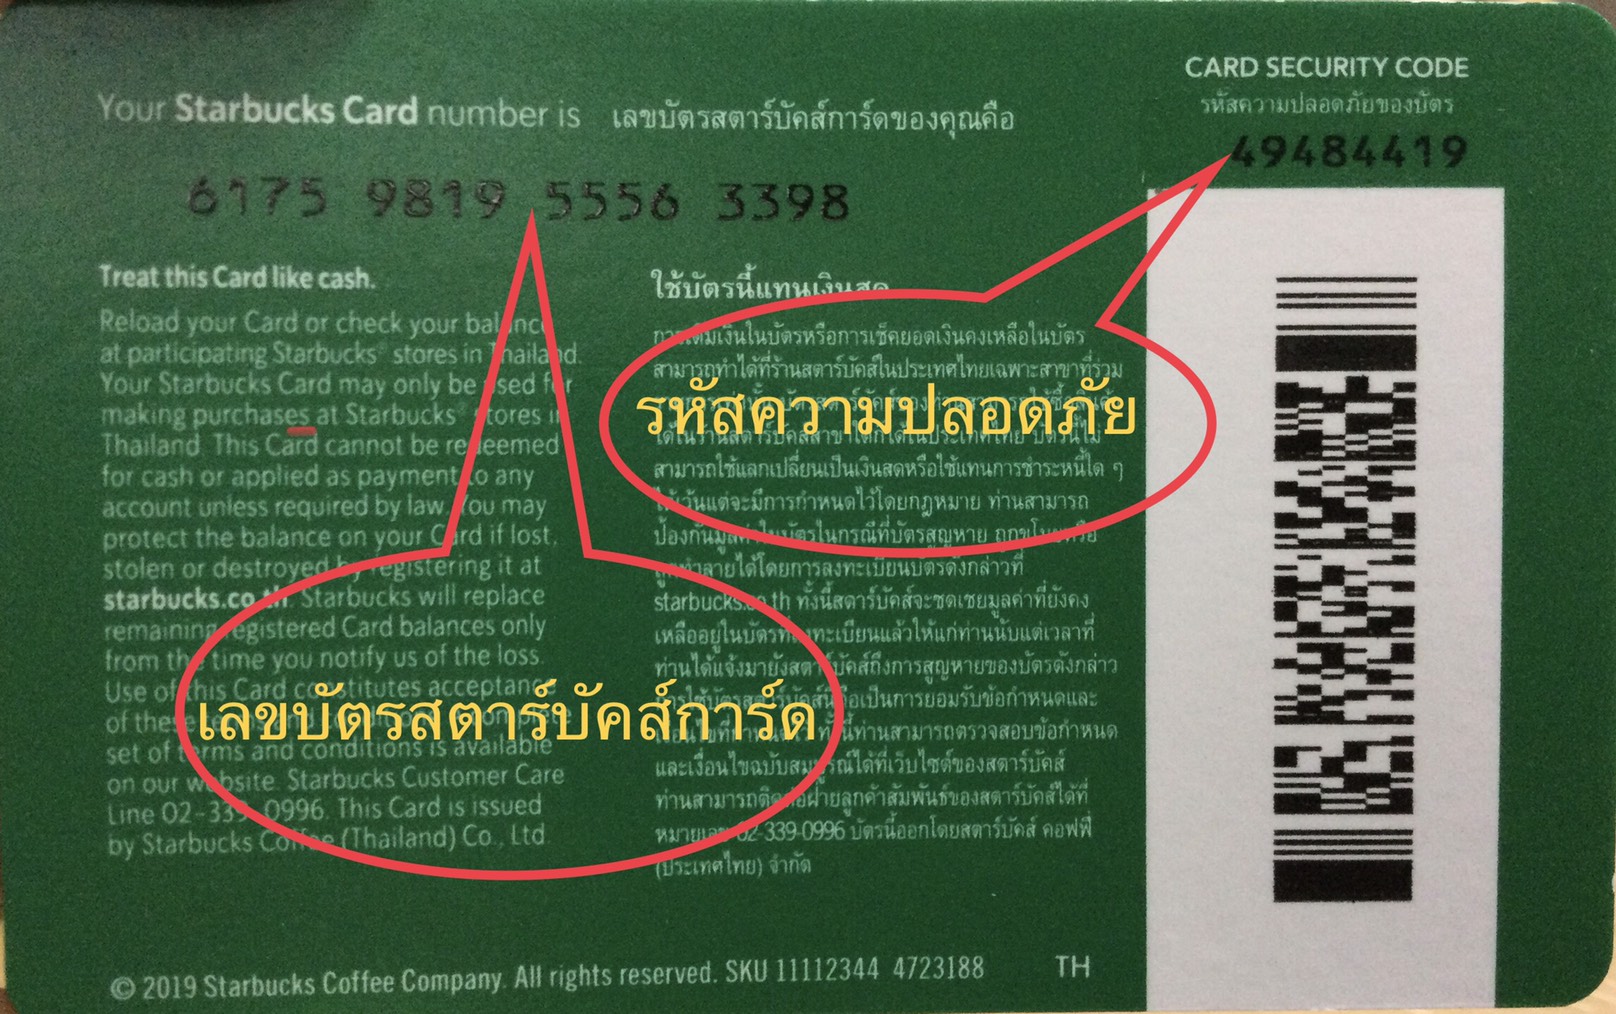 ภาพที่ให้รายละเอียดเกี่ยวกับ Starbucks card มูลค่า 500 บาท ((ส่งรหัสทางแชทเท่านั้น ))